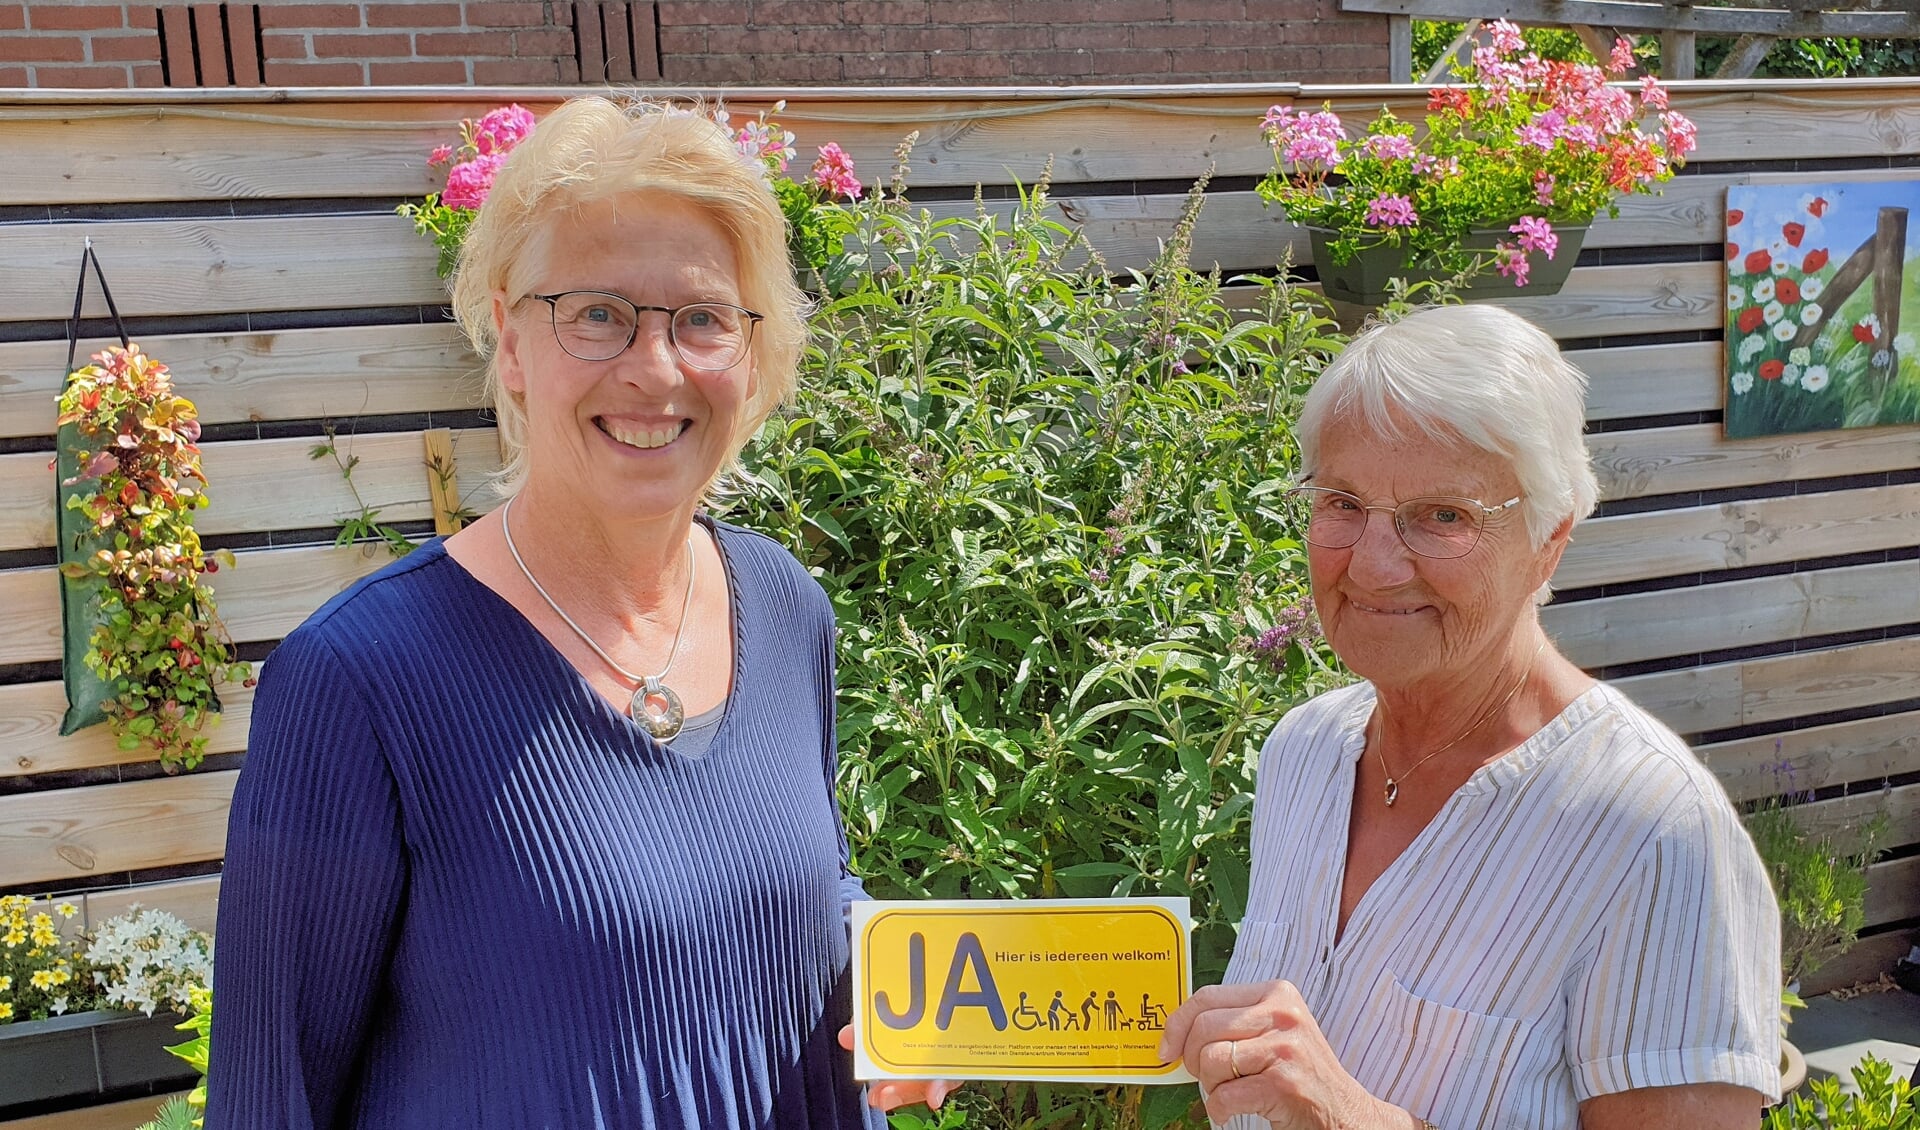 Voorzitter Monique van Zanten en secretaris Gurie Lelie-Rezée met de gele sticker die gelijk duidelijk maakt ‘Ja, hier (in deze winkel/ruimte) is iedereen welkom’.